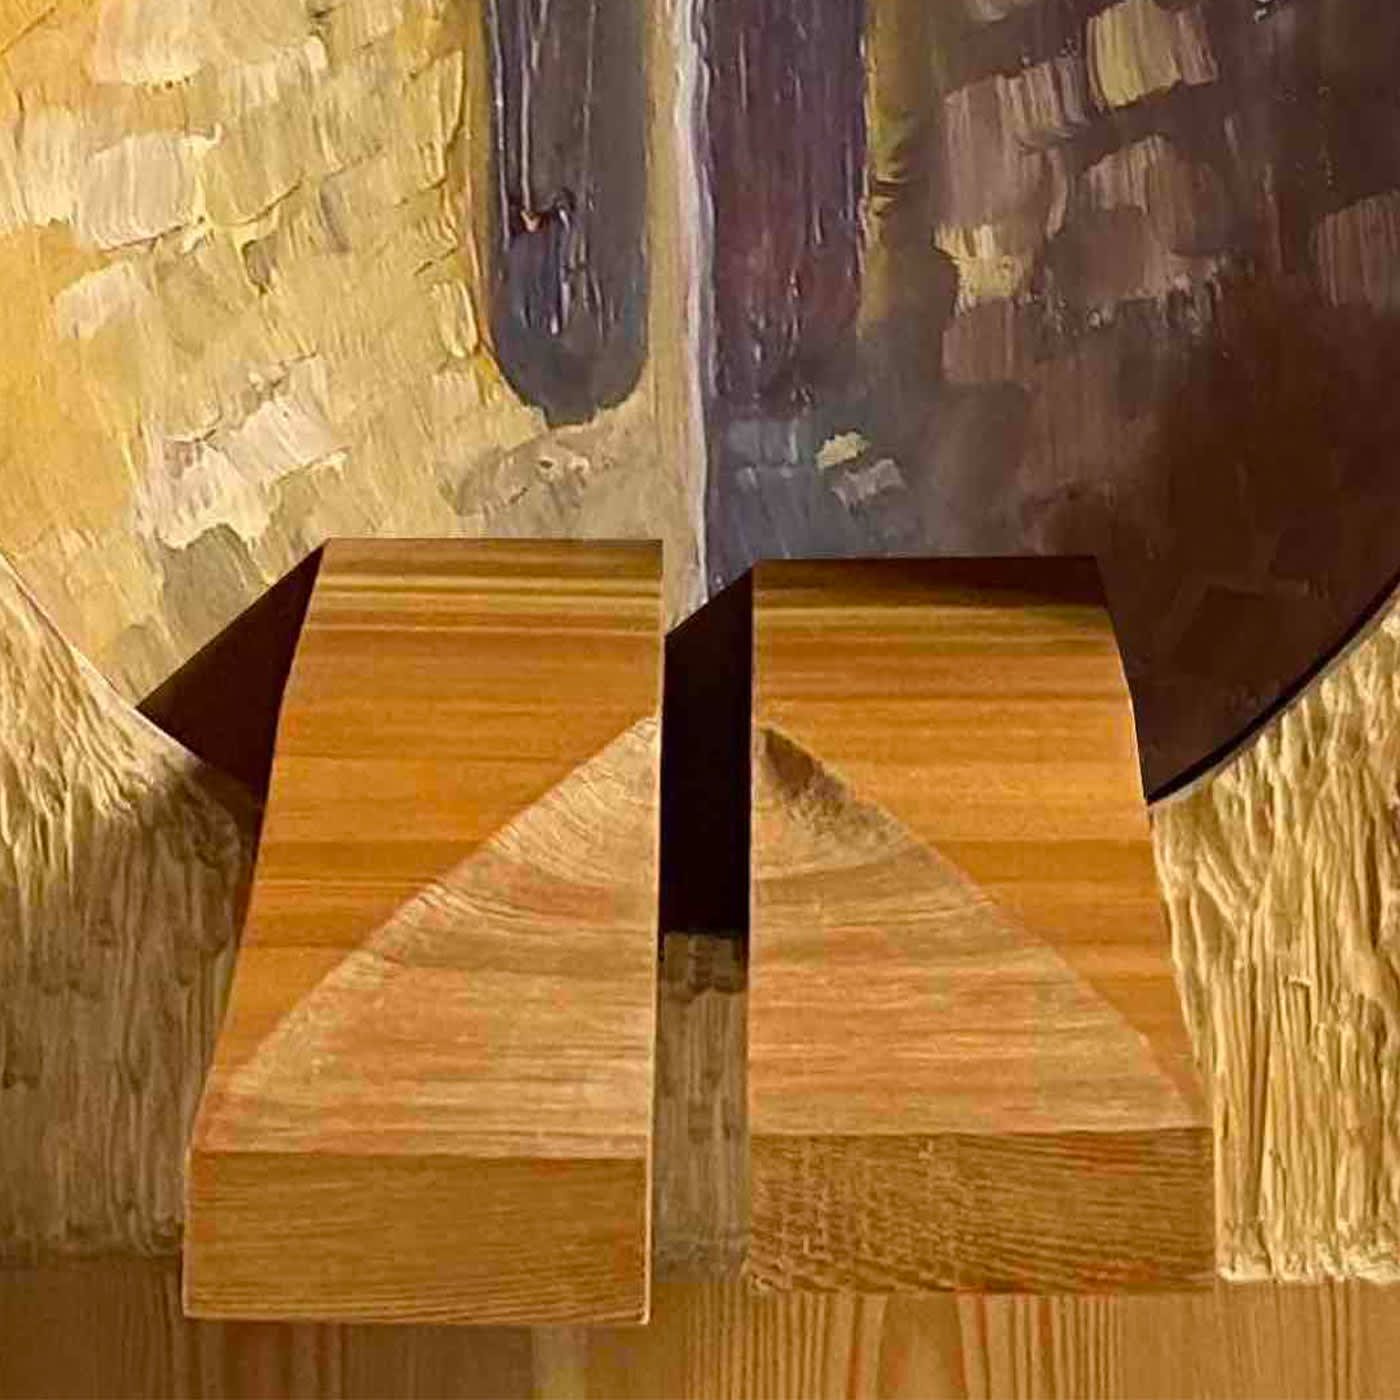 Valigia Due Sideboard by Pietro Meccani - Meccani Design